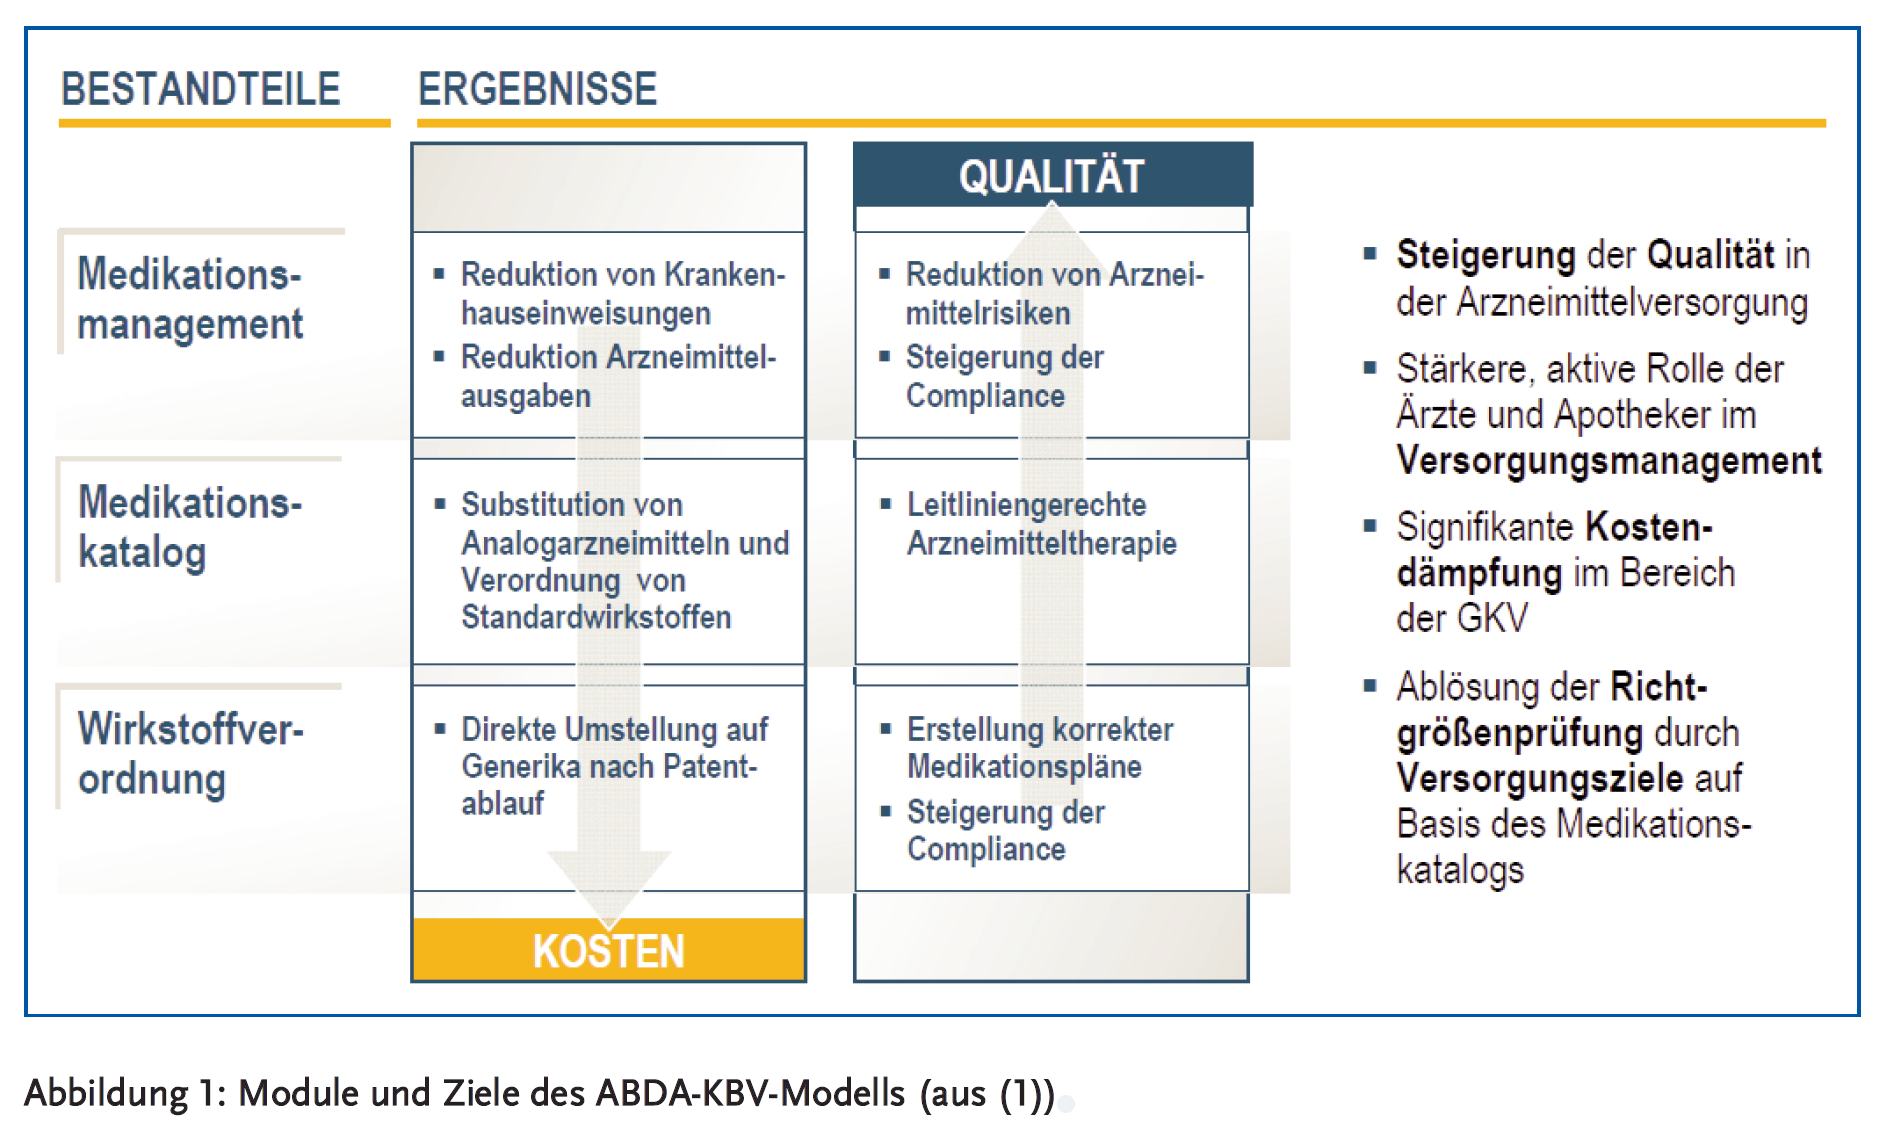 Abbildung 1: Module und Ziele des ABDA-KBV-Modells (aus (1))